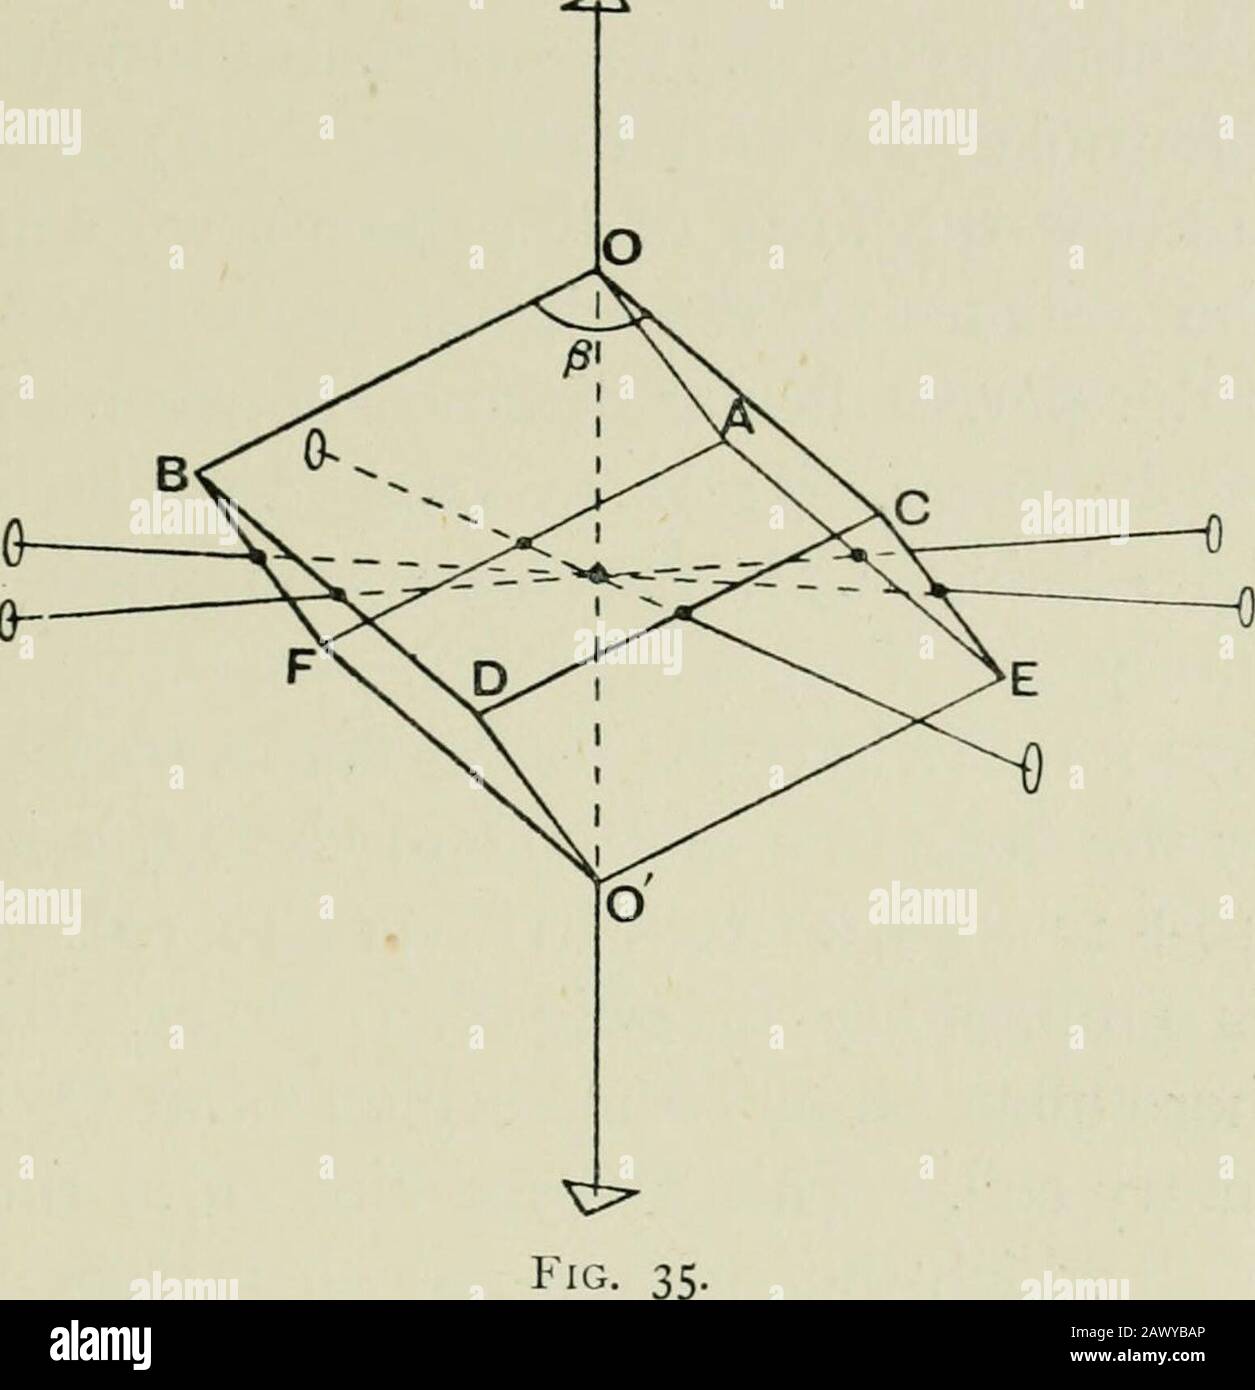 Röntgenstrahlen und Kristallstruktur . Mineralien. Sie gehören zu einer Nasen-Bohedral-Klasse des hexagonalen Systems. Thecrystal hat jeweils eine Dreifachsymmetrie, wobei sich drei Symmetrieebenen darin schneiden und drei Achsen doppelter Symmetrie an den rechten Stelen zu ihr. Ein Rhomboeder aus Calcit ist Shownin Abb. A, und es dient zur Veranschaulichung der Anordnung dieser Achsen und Symmetrieebenen. Die Kanten des Rhombs sind alle gleich; ebenso die Winkel A ob,BOC, CO A. Die Symmetrieachsen sind in der Abbildung markiert, 00 ist die trigonale Achse. Digonalachsen verlaufen durch die mittleren Punkte der gegenüberliegenden Kanten, so Stockfoto